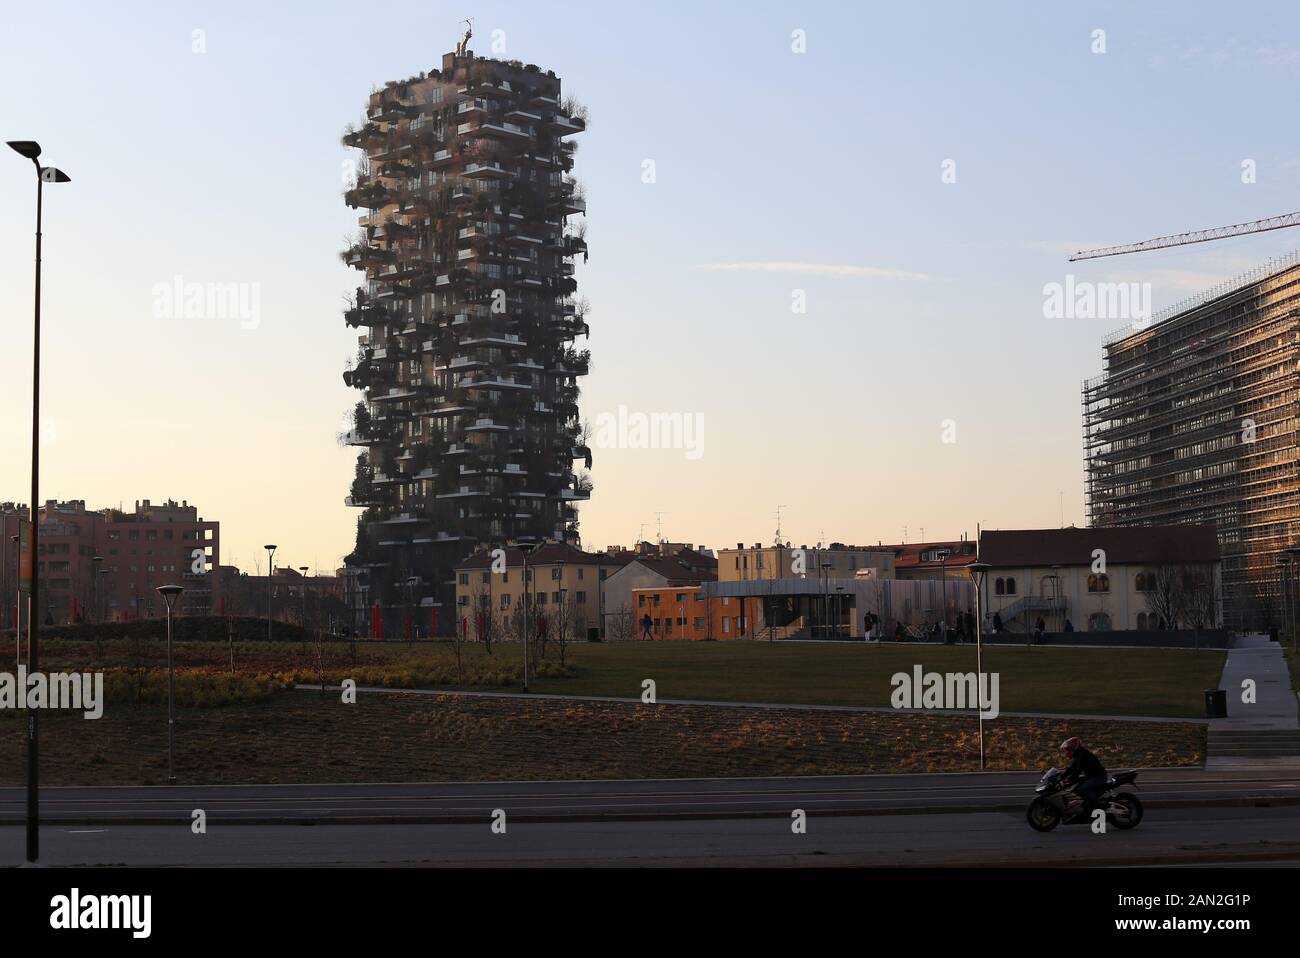 Mailand, Italien - 25 Februar 2019: Bosco Verticale Wohnturm im Bezirk Porta Nuova, Mailand, Italien. Wolkenkratzer mit Bäumen auf dem Balkon Stockfoto